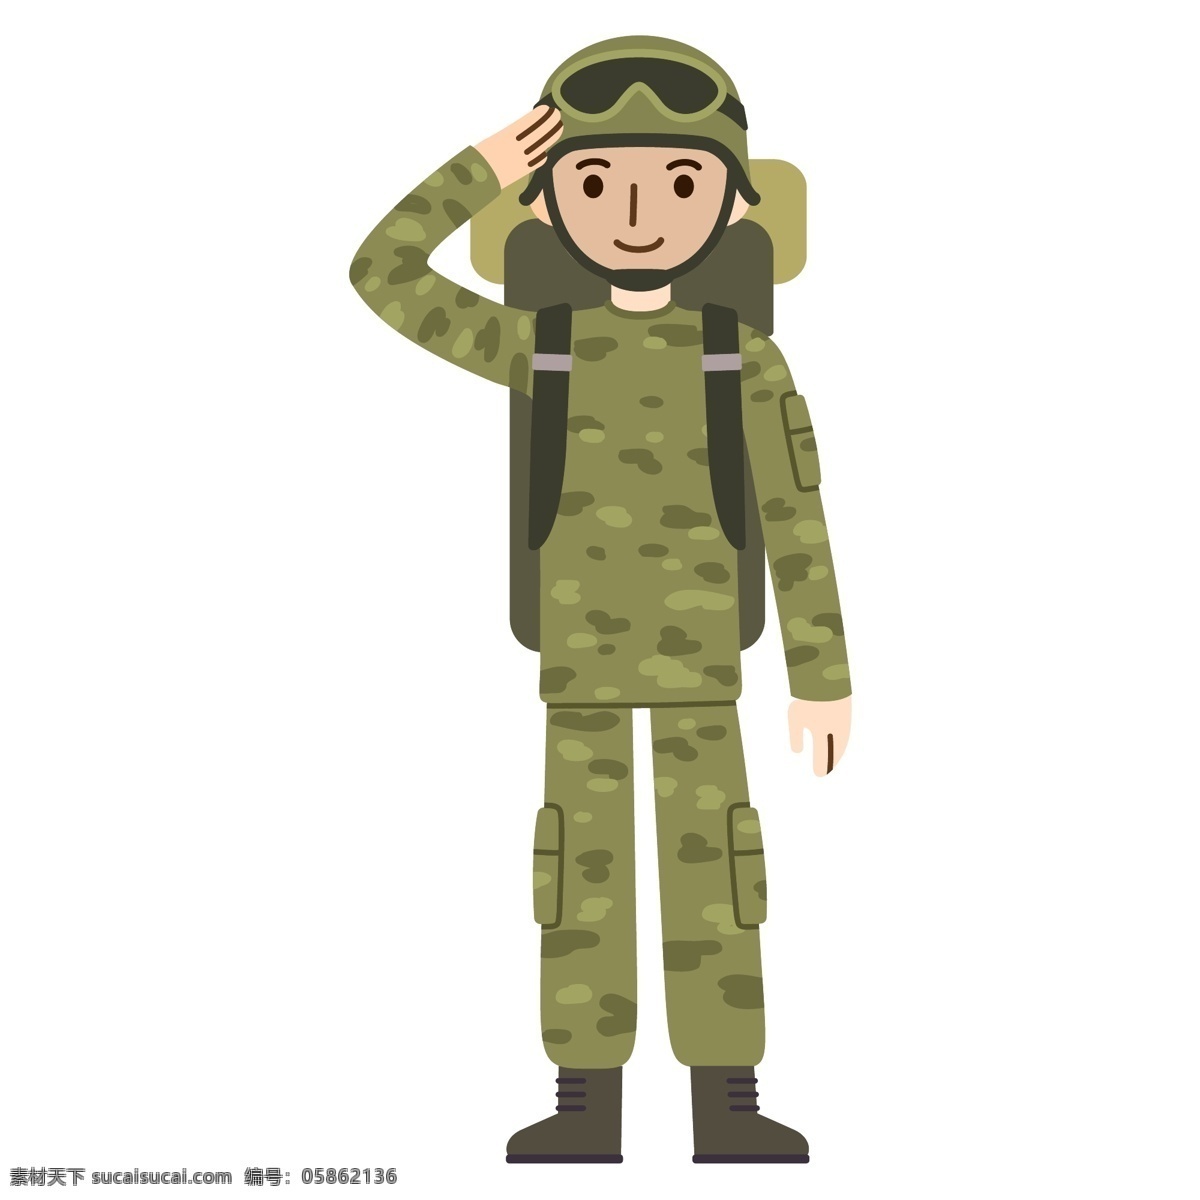 卡通战士 可爱 卡通 扁平化 战士 军人 士兵 迷彩服 人物 背景 海报 宣传 矢量素材